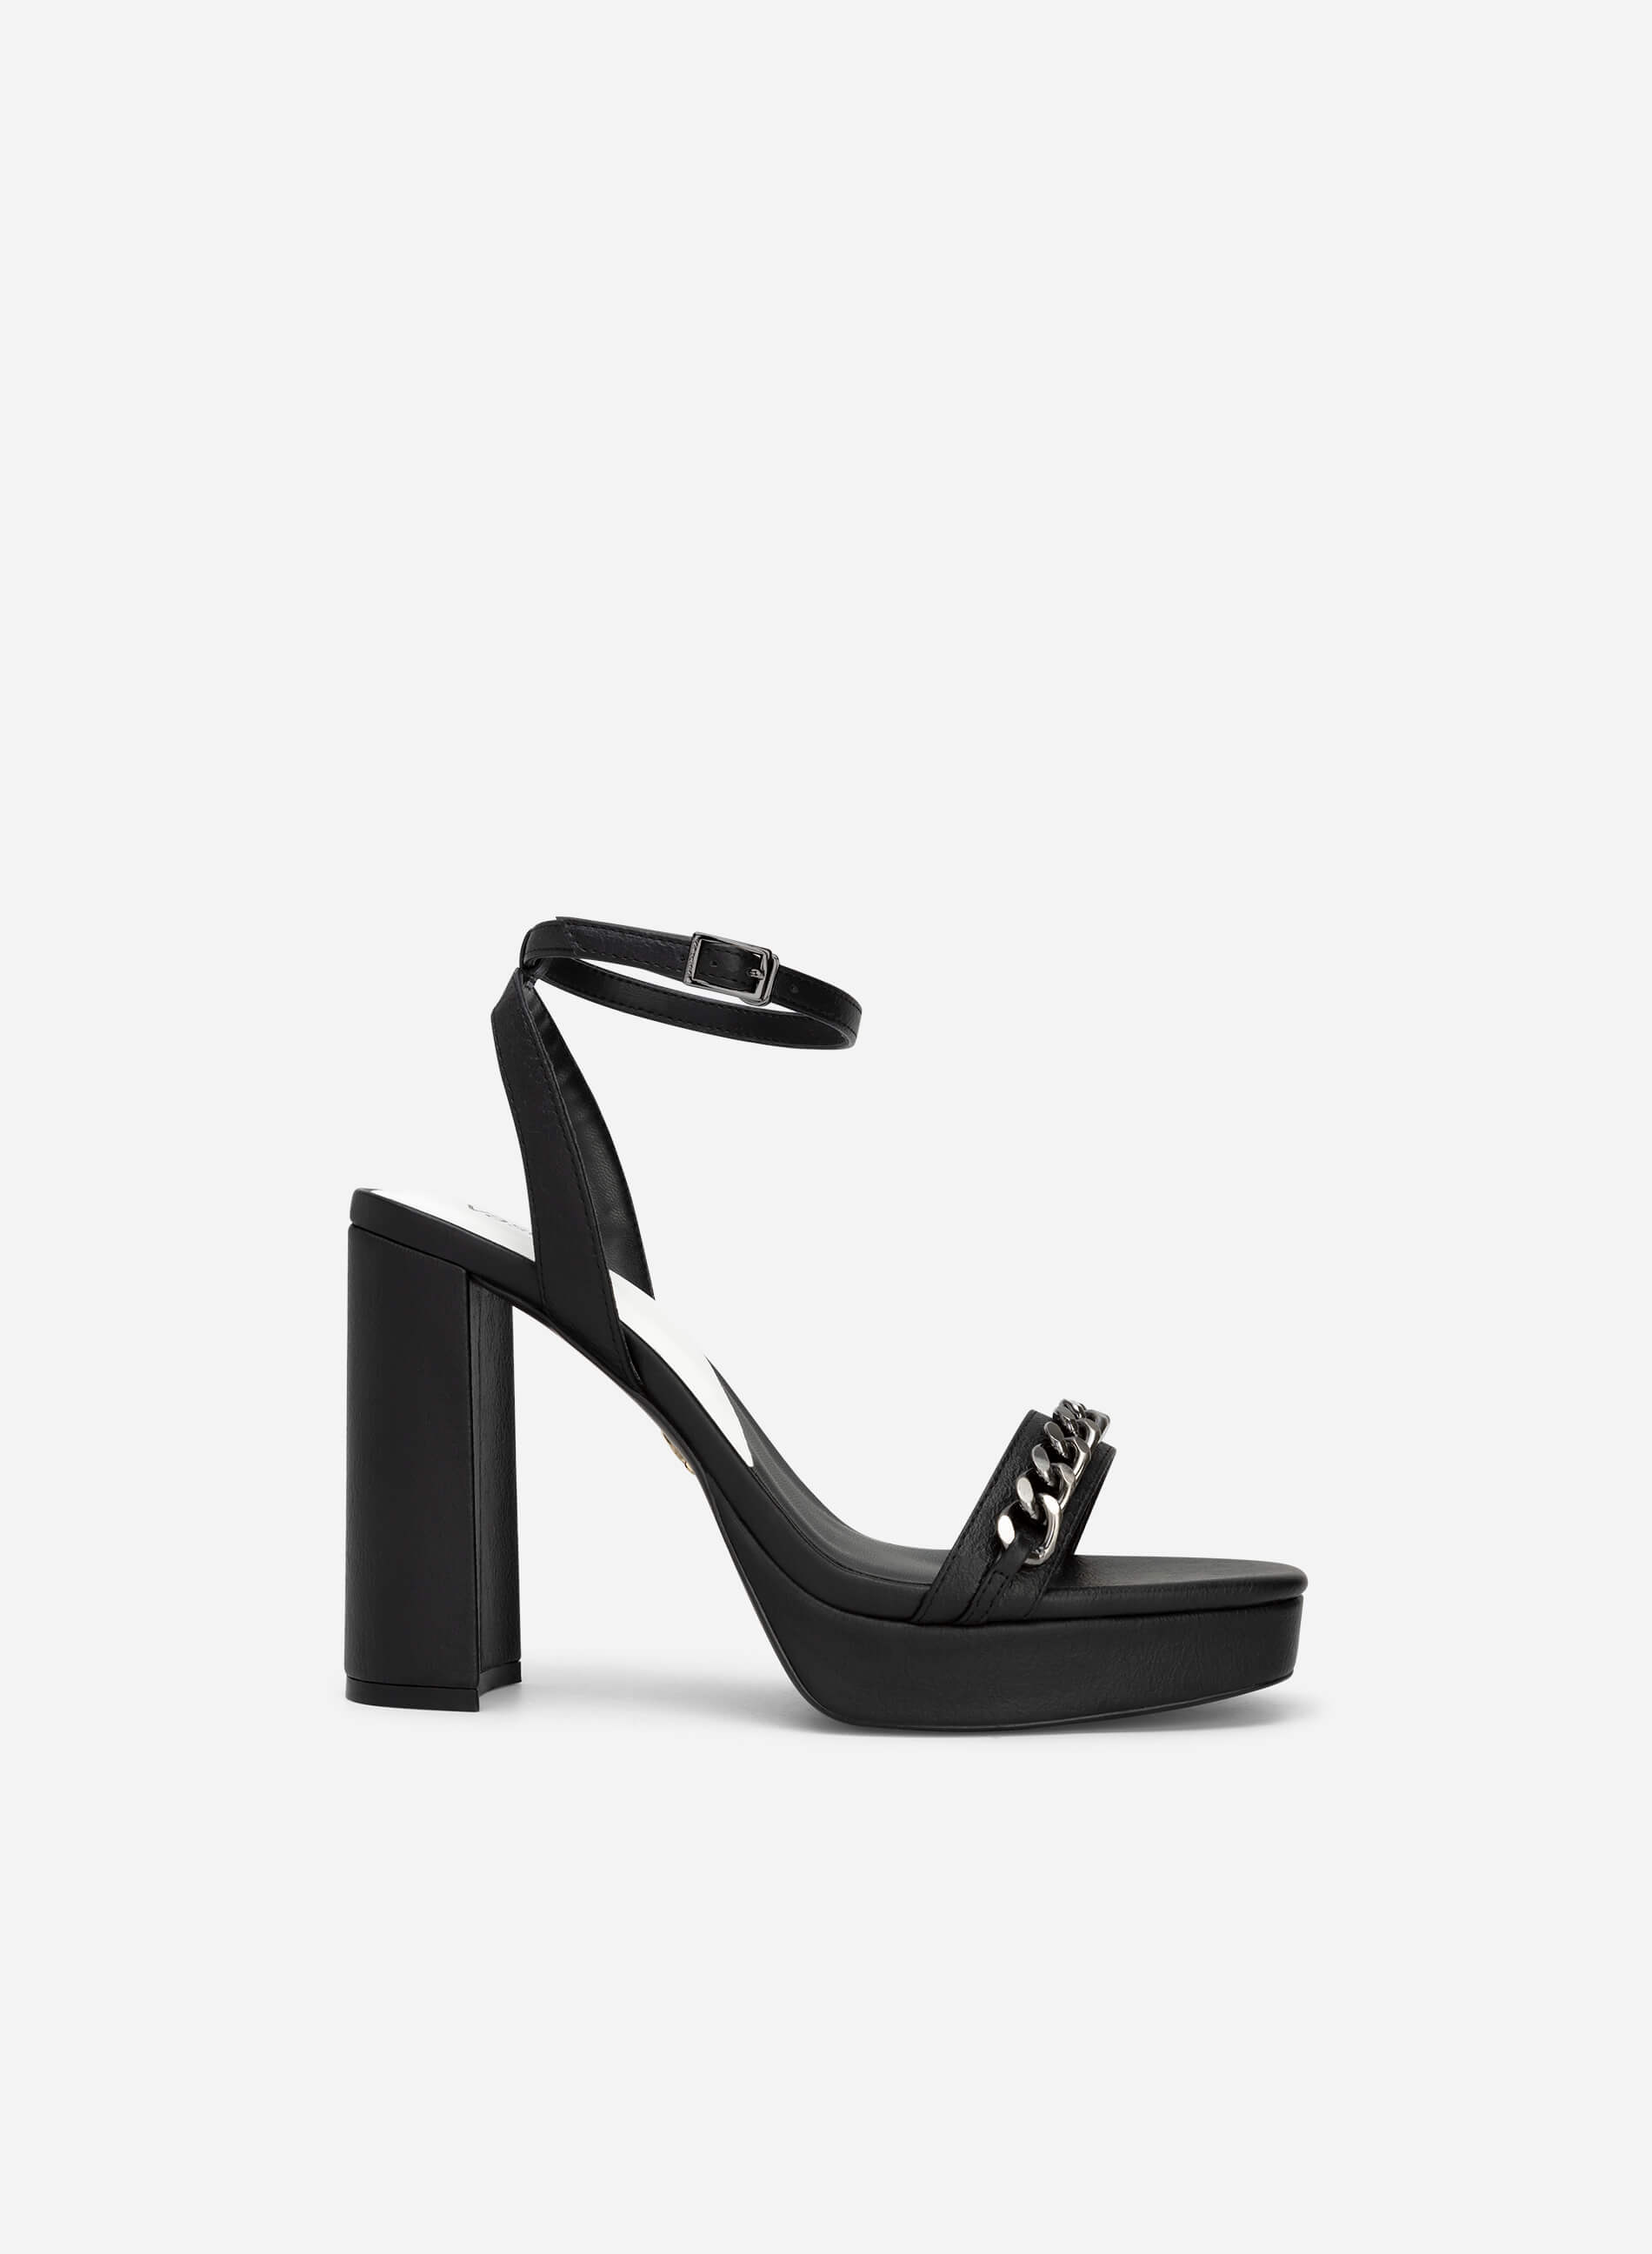 Chain Link Décor Ankle Strap Sandals - PUM 0732 - Black | VASCARA